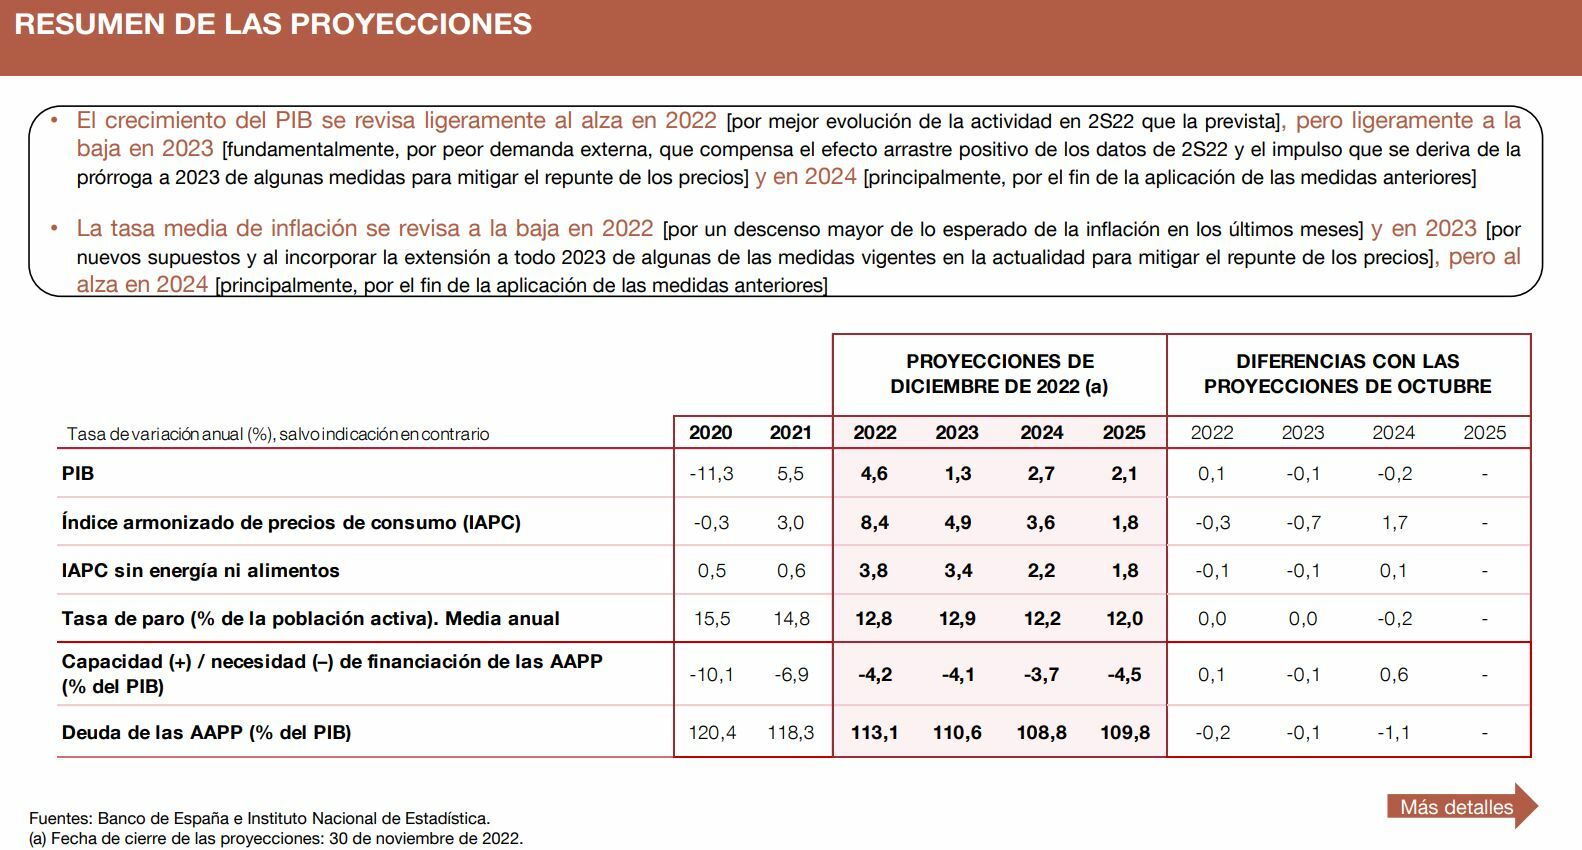 Banco de España resumen proyecciones diciembre de 2022